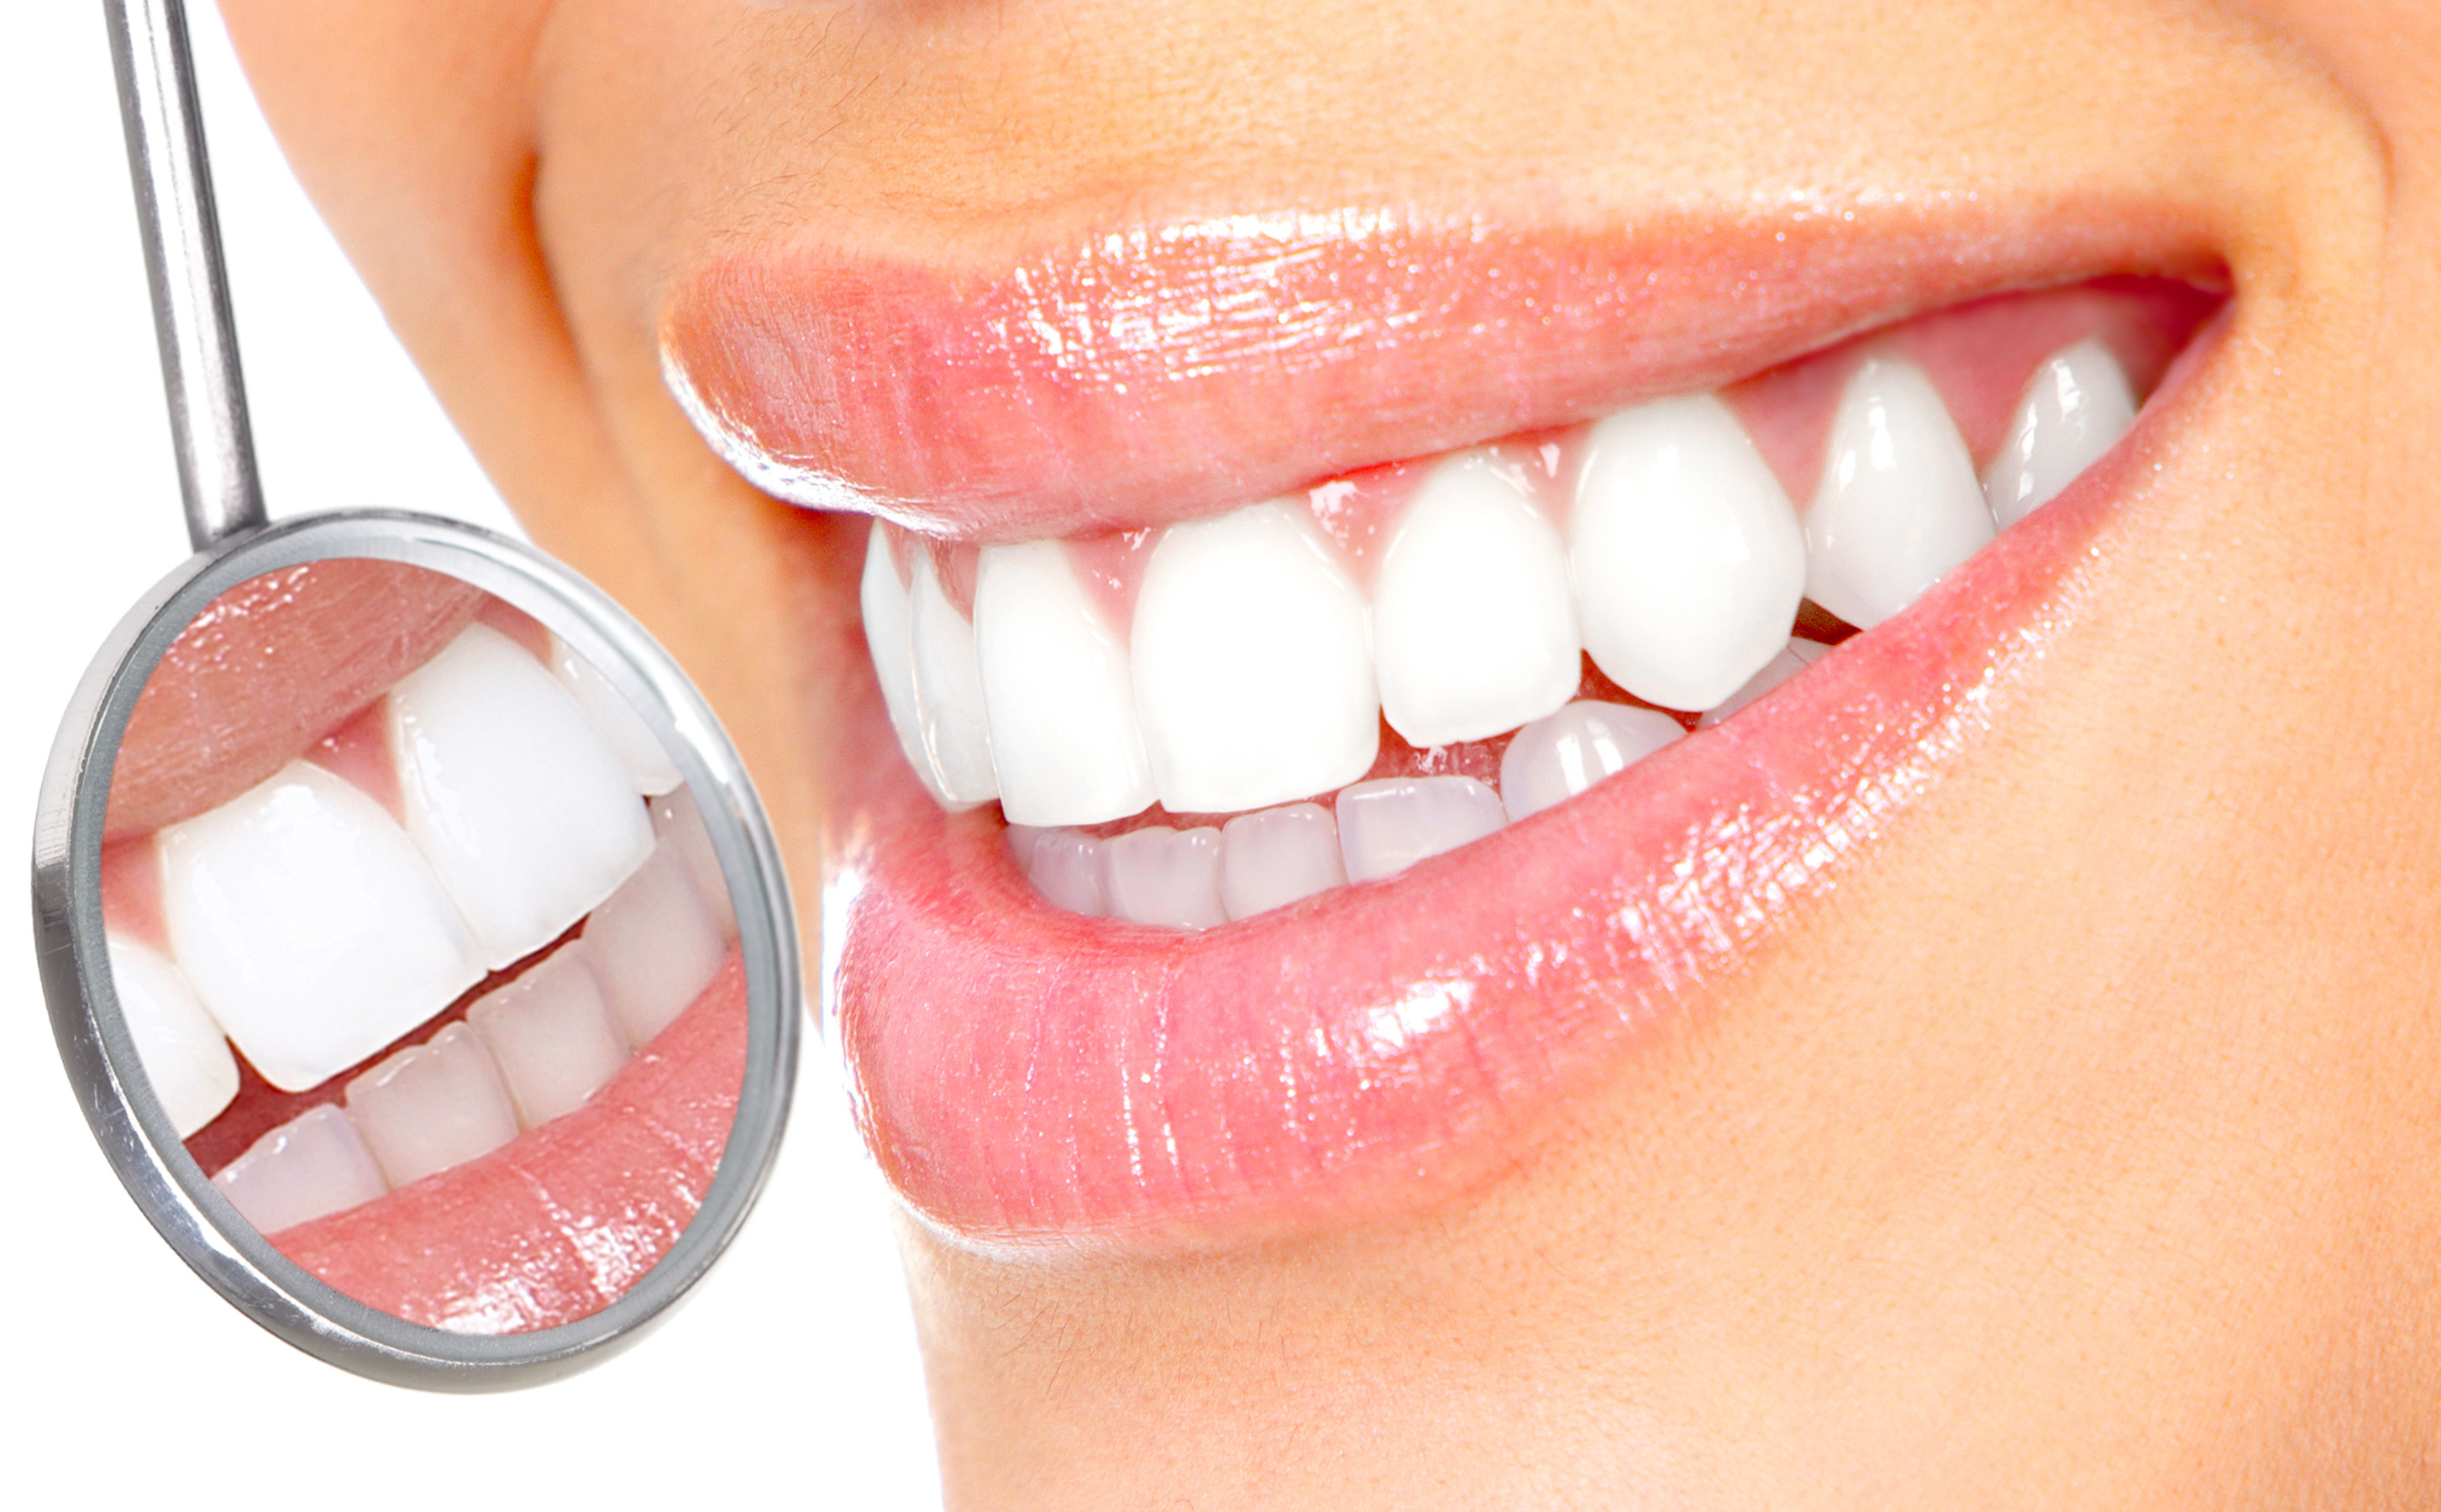 ۴ عاملی که سبب پوسیدگی دندان می شود